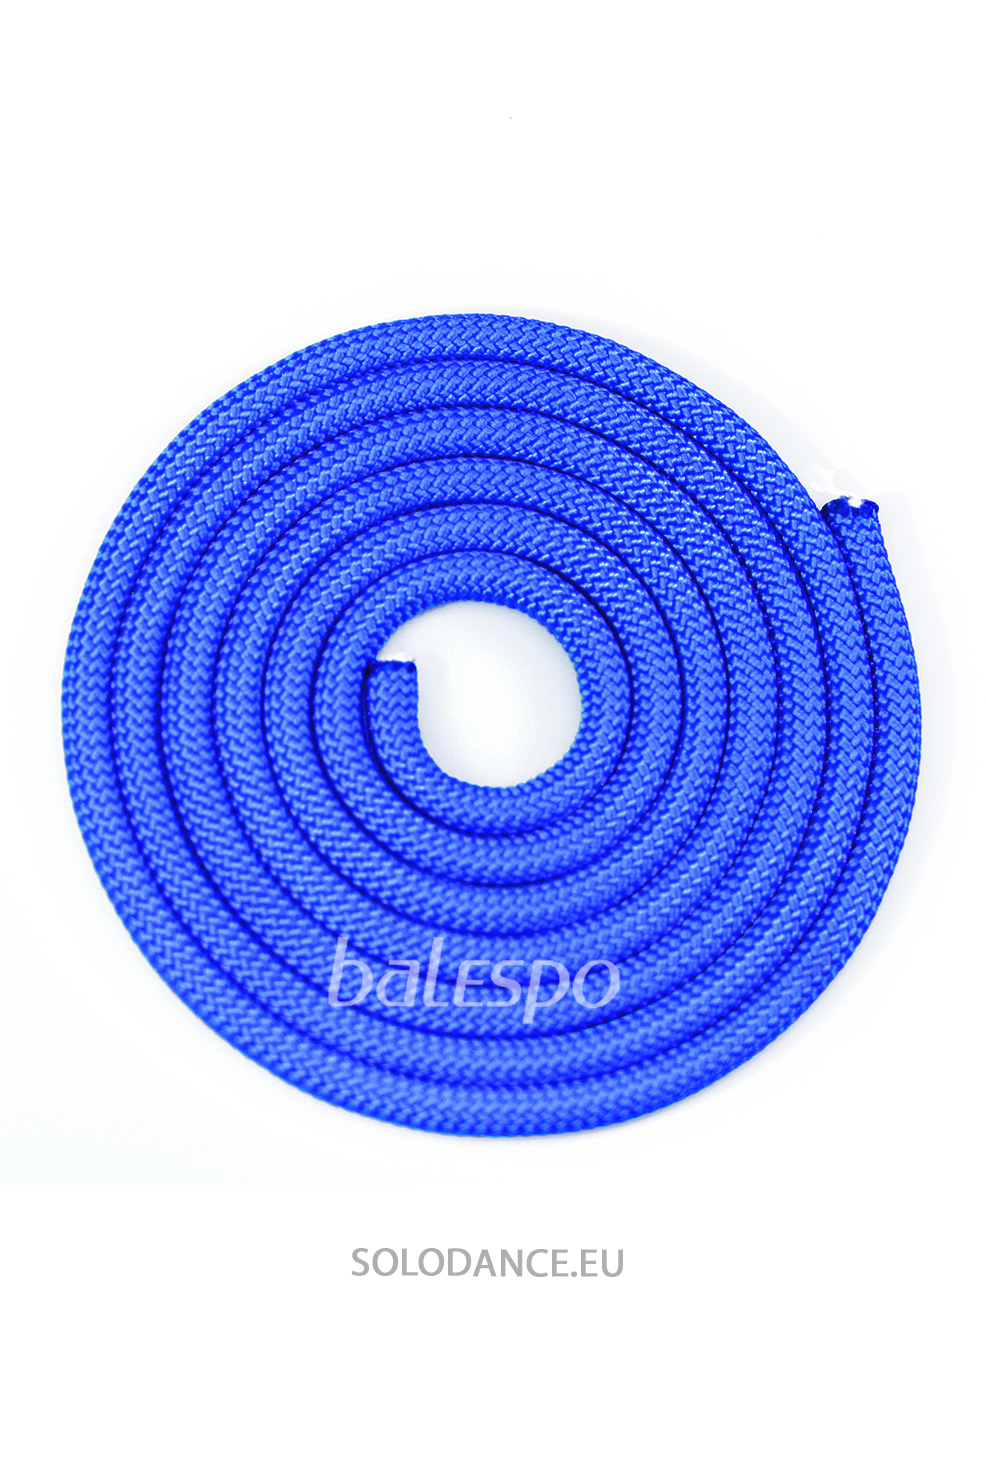 Gymnastické švihadlo BALESPO modré 2,5 m